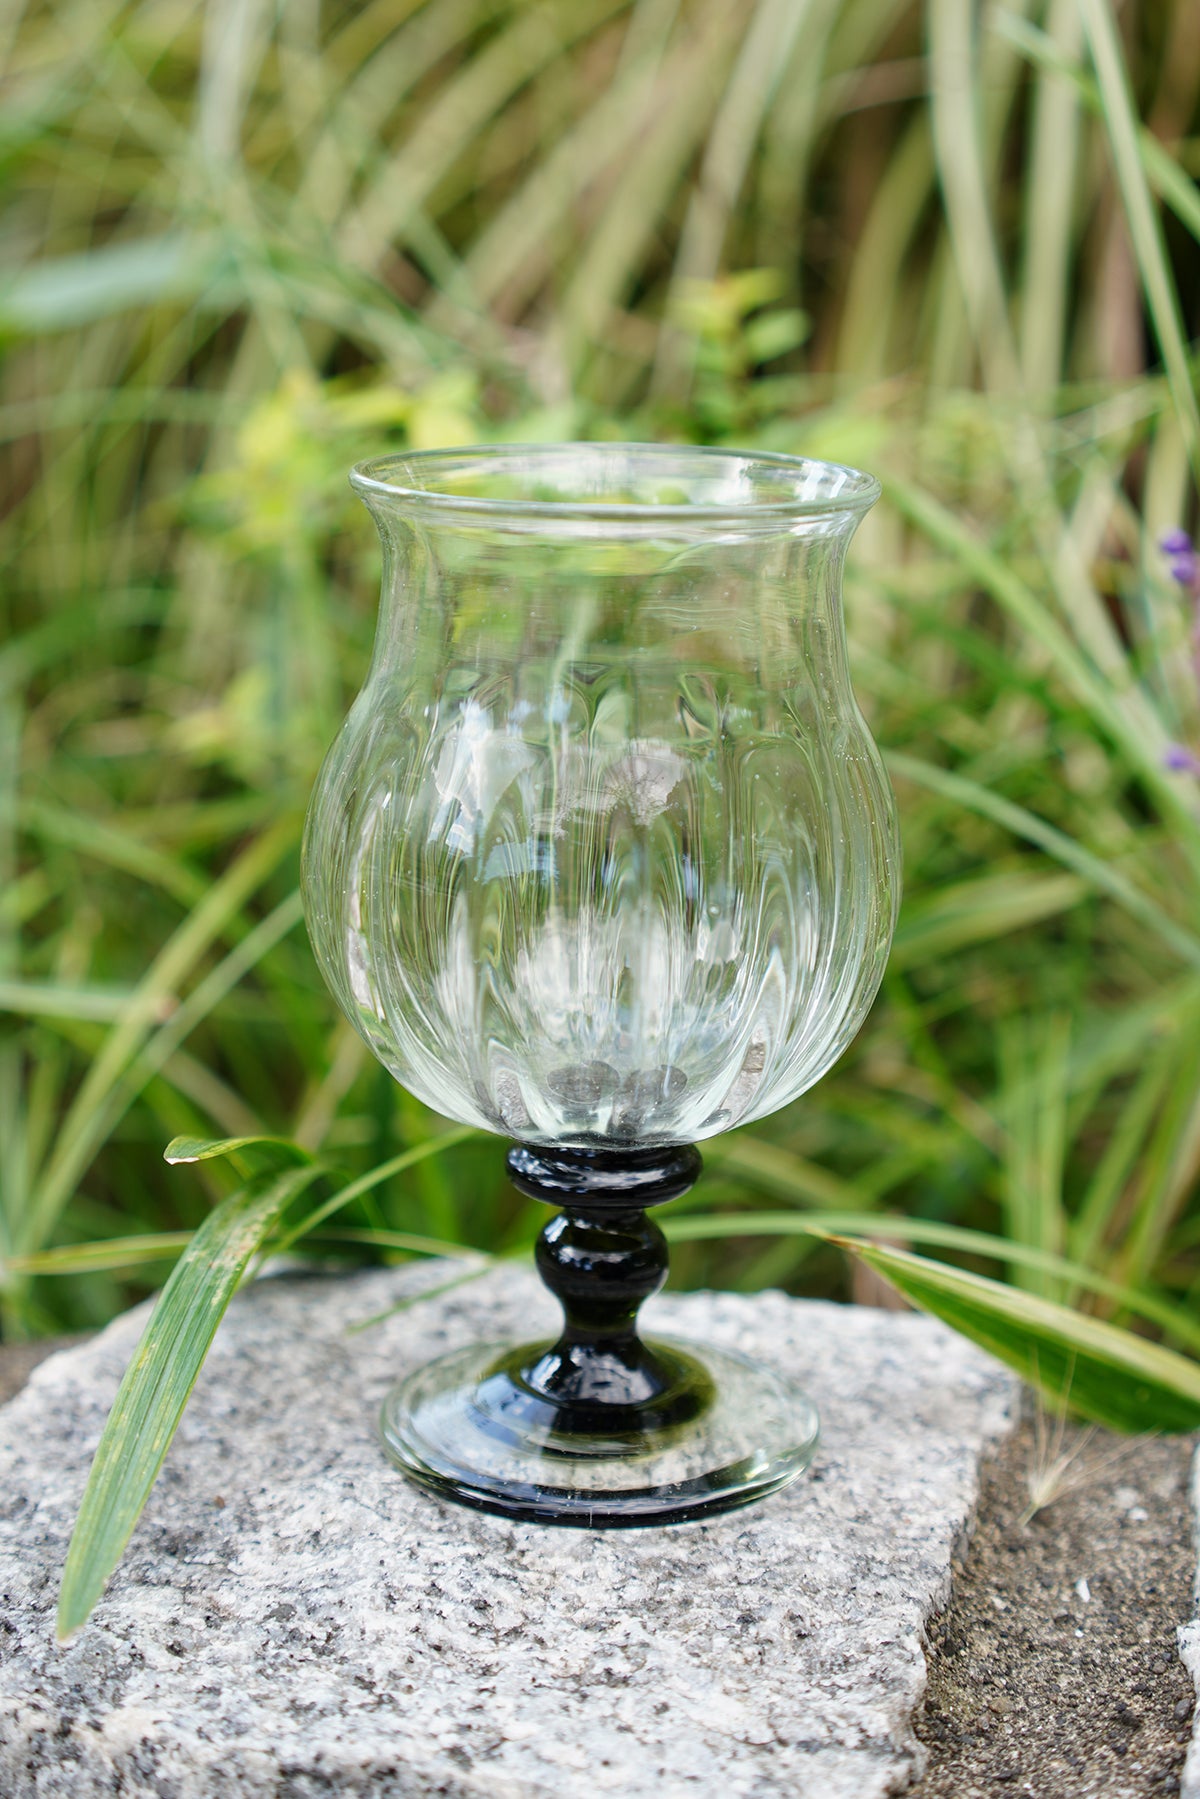 Glass studio wine glass